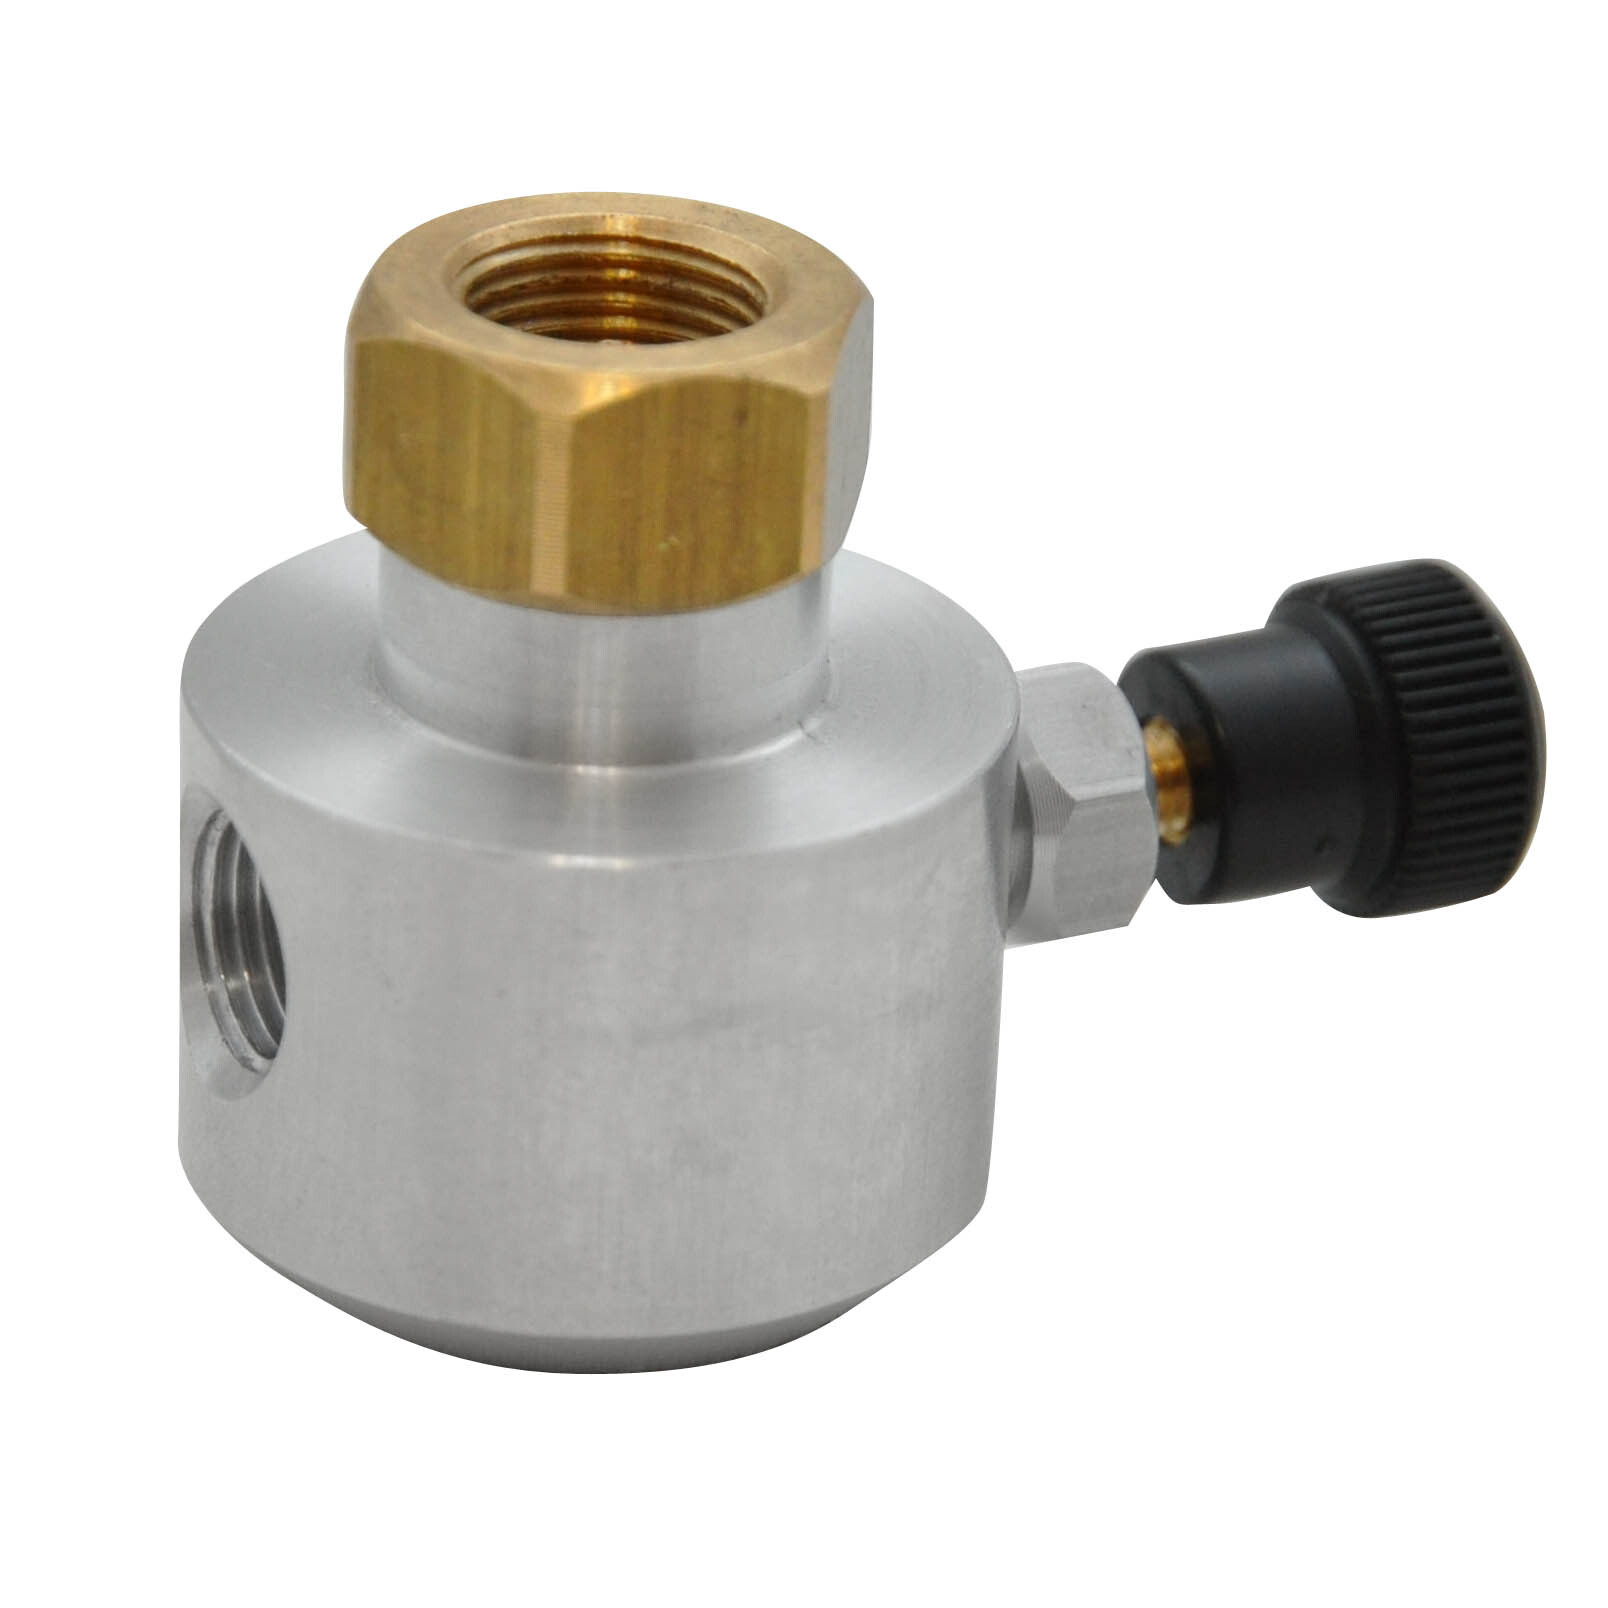 Regulating valve for pressurized gas cylinder